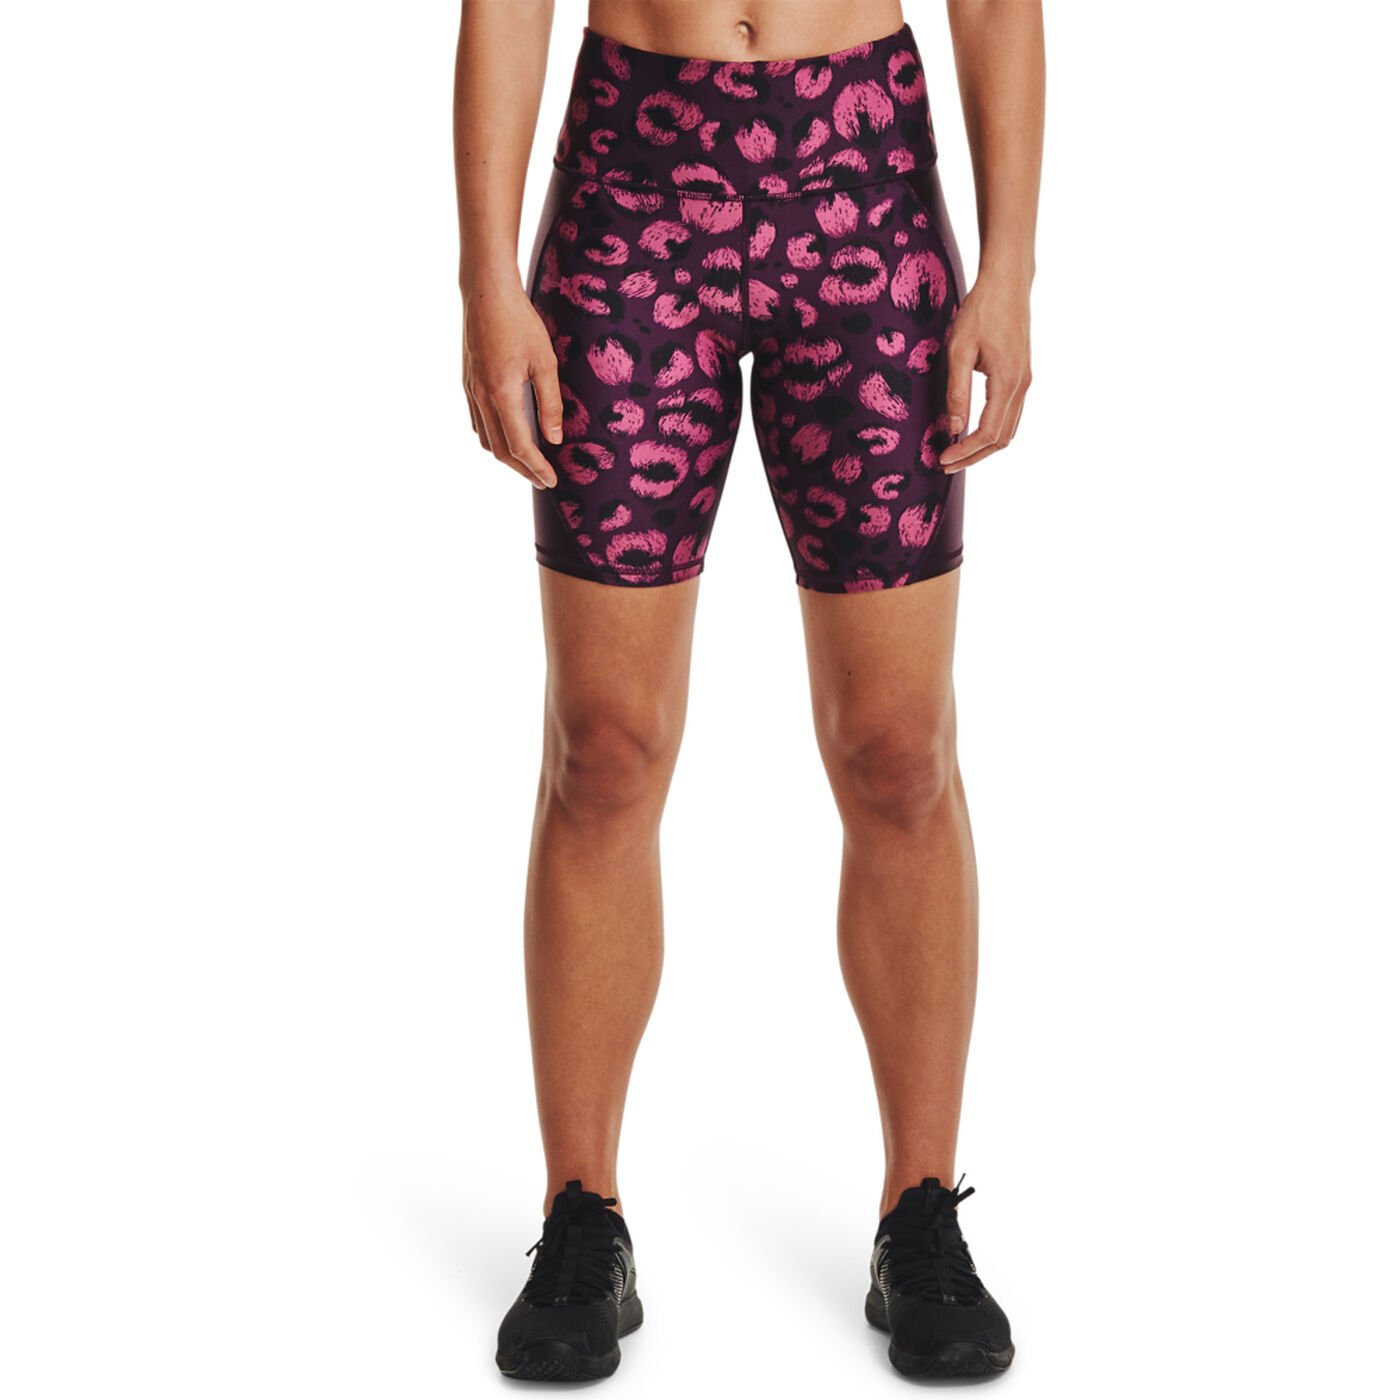 Women's HeatGear® Armour Shine Bike Shorts